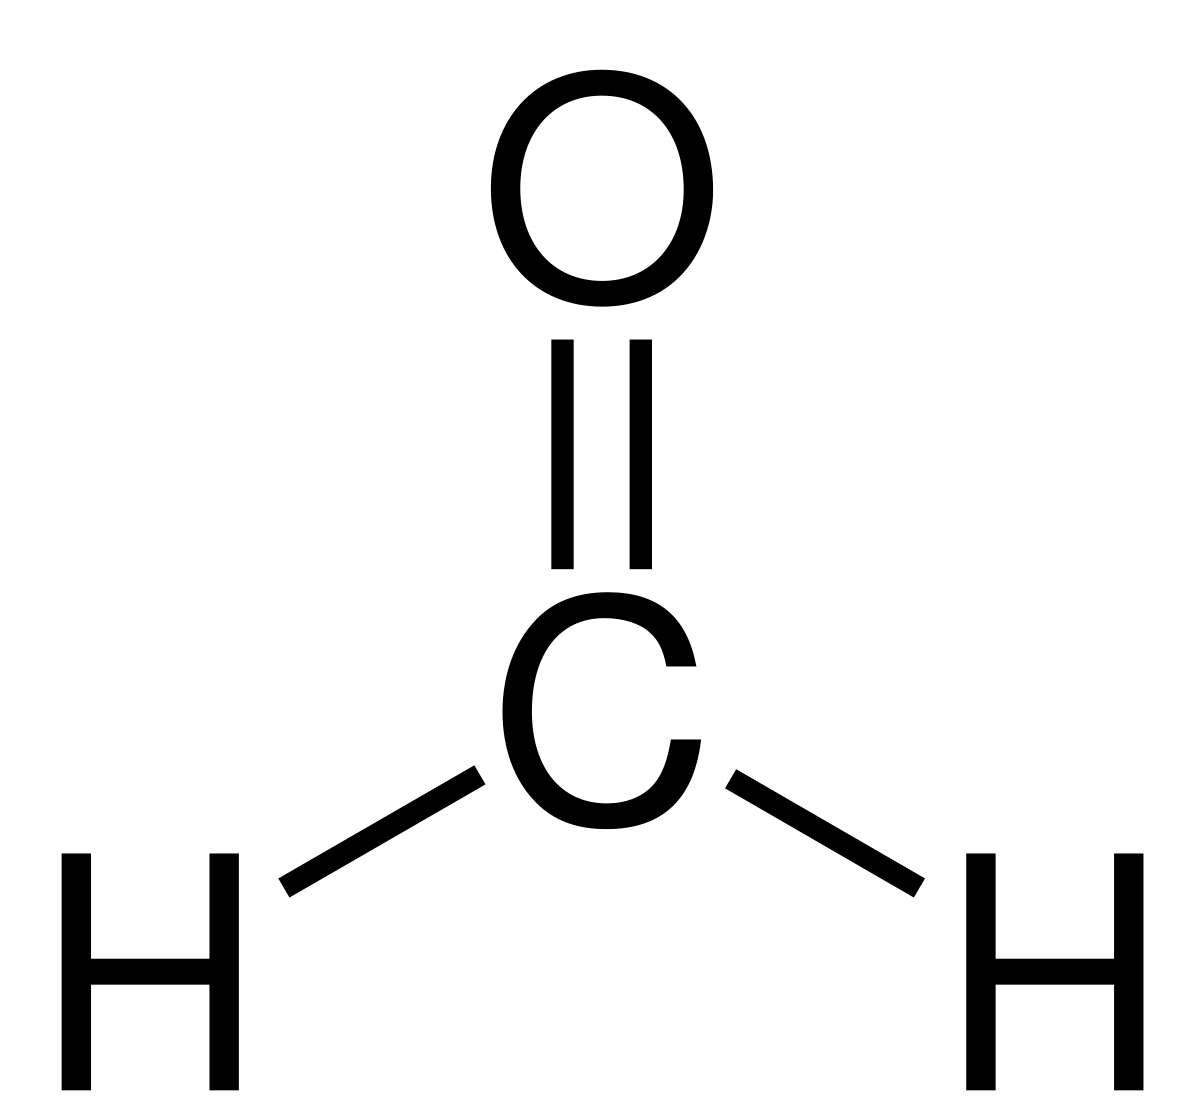 immagine con fondo bianco che illustra la composizione chimica della formaldeide